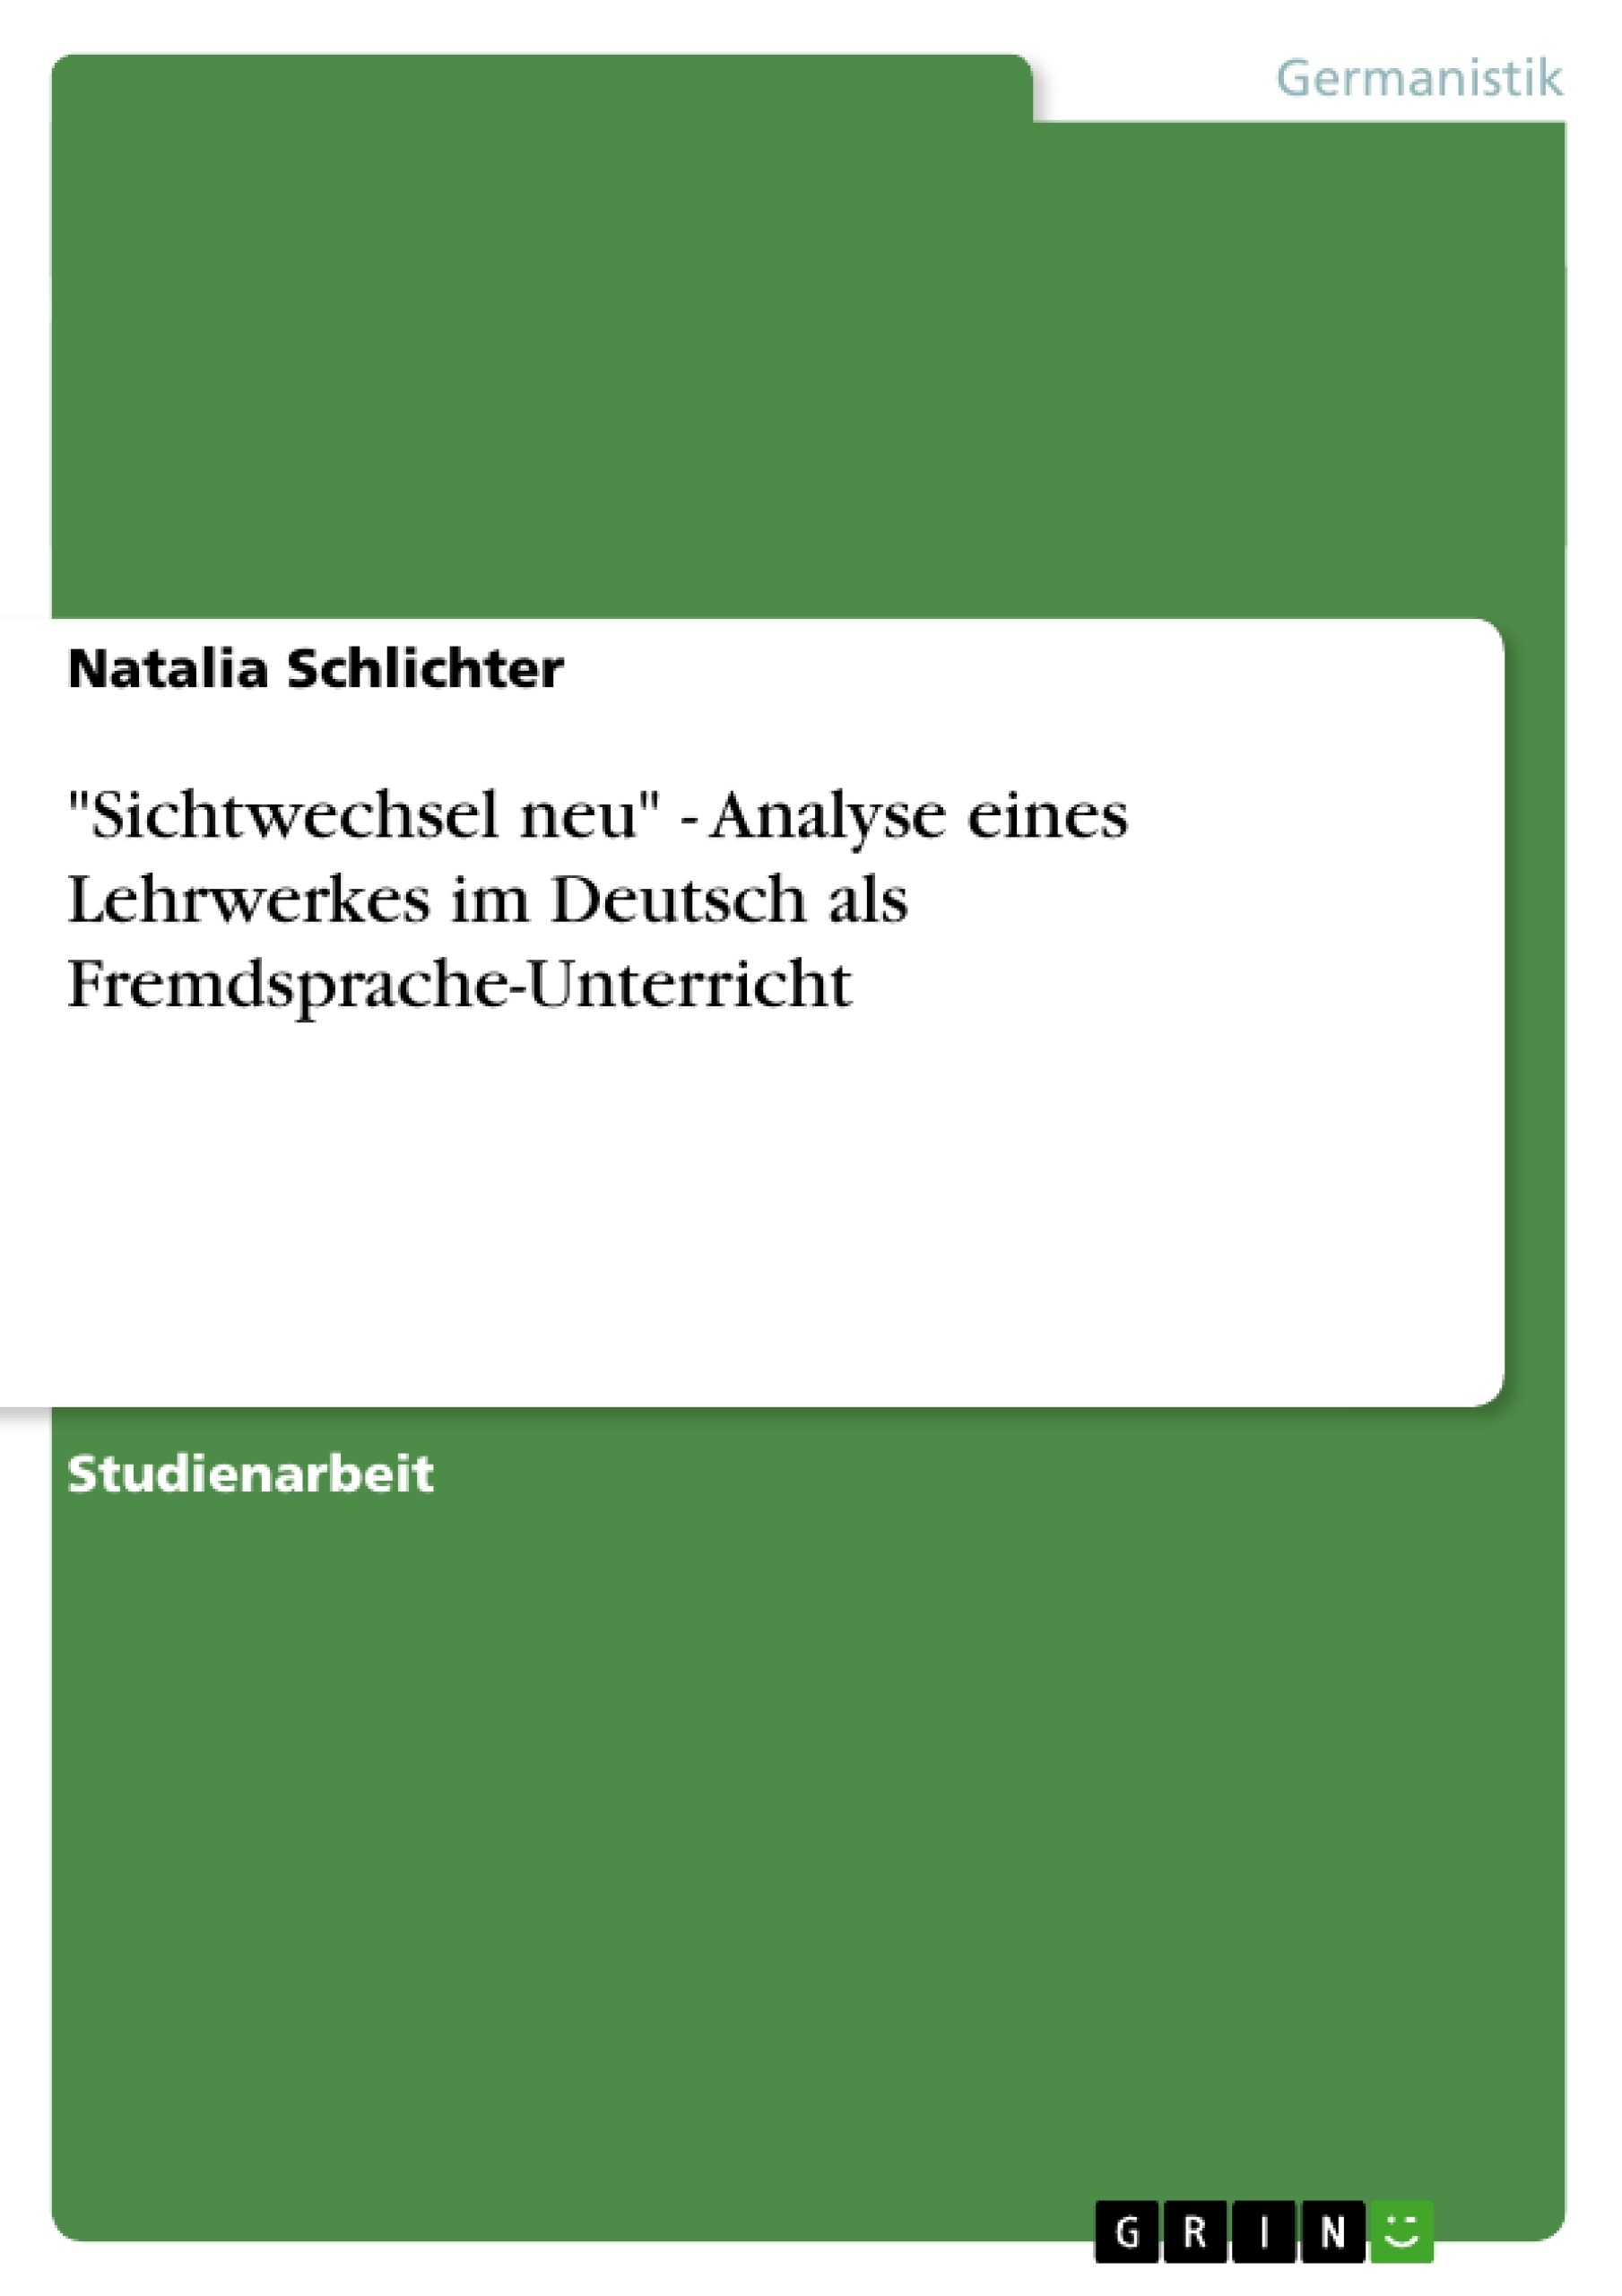 Título: "Sichtwechsel neu" - Analyse eines Lehrwerkes im Deutsch als Fremdsprache-Unterricht